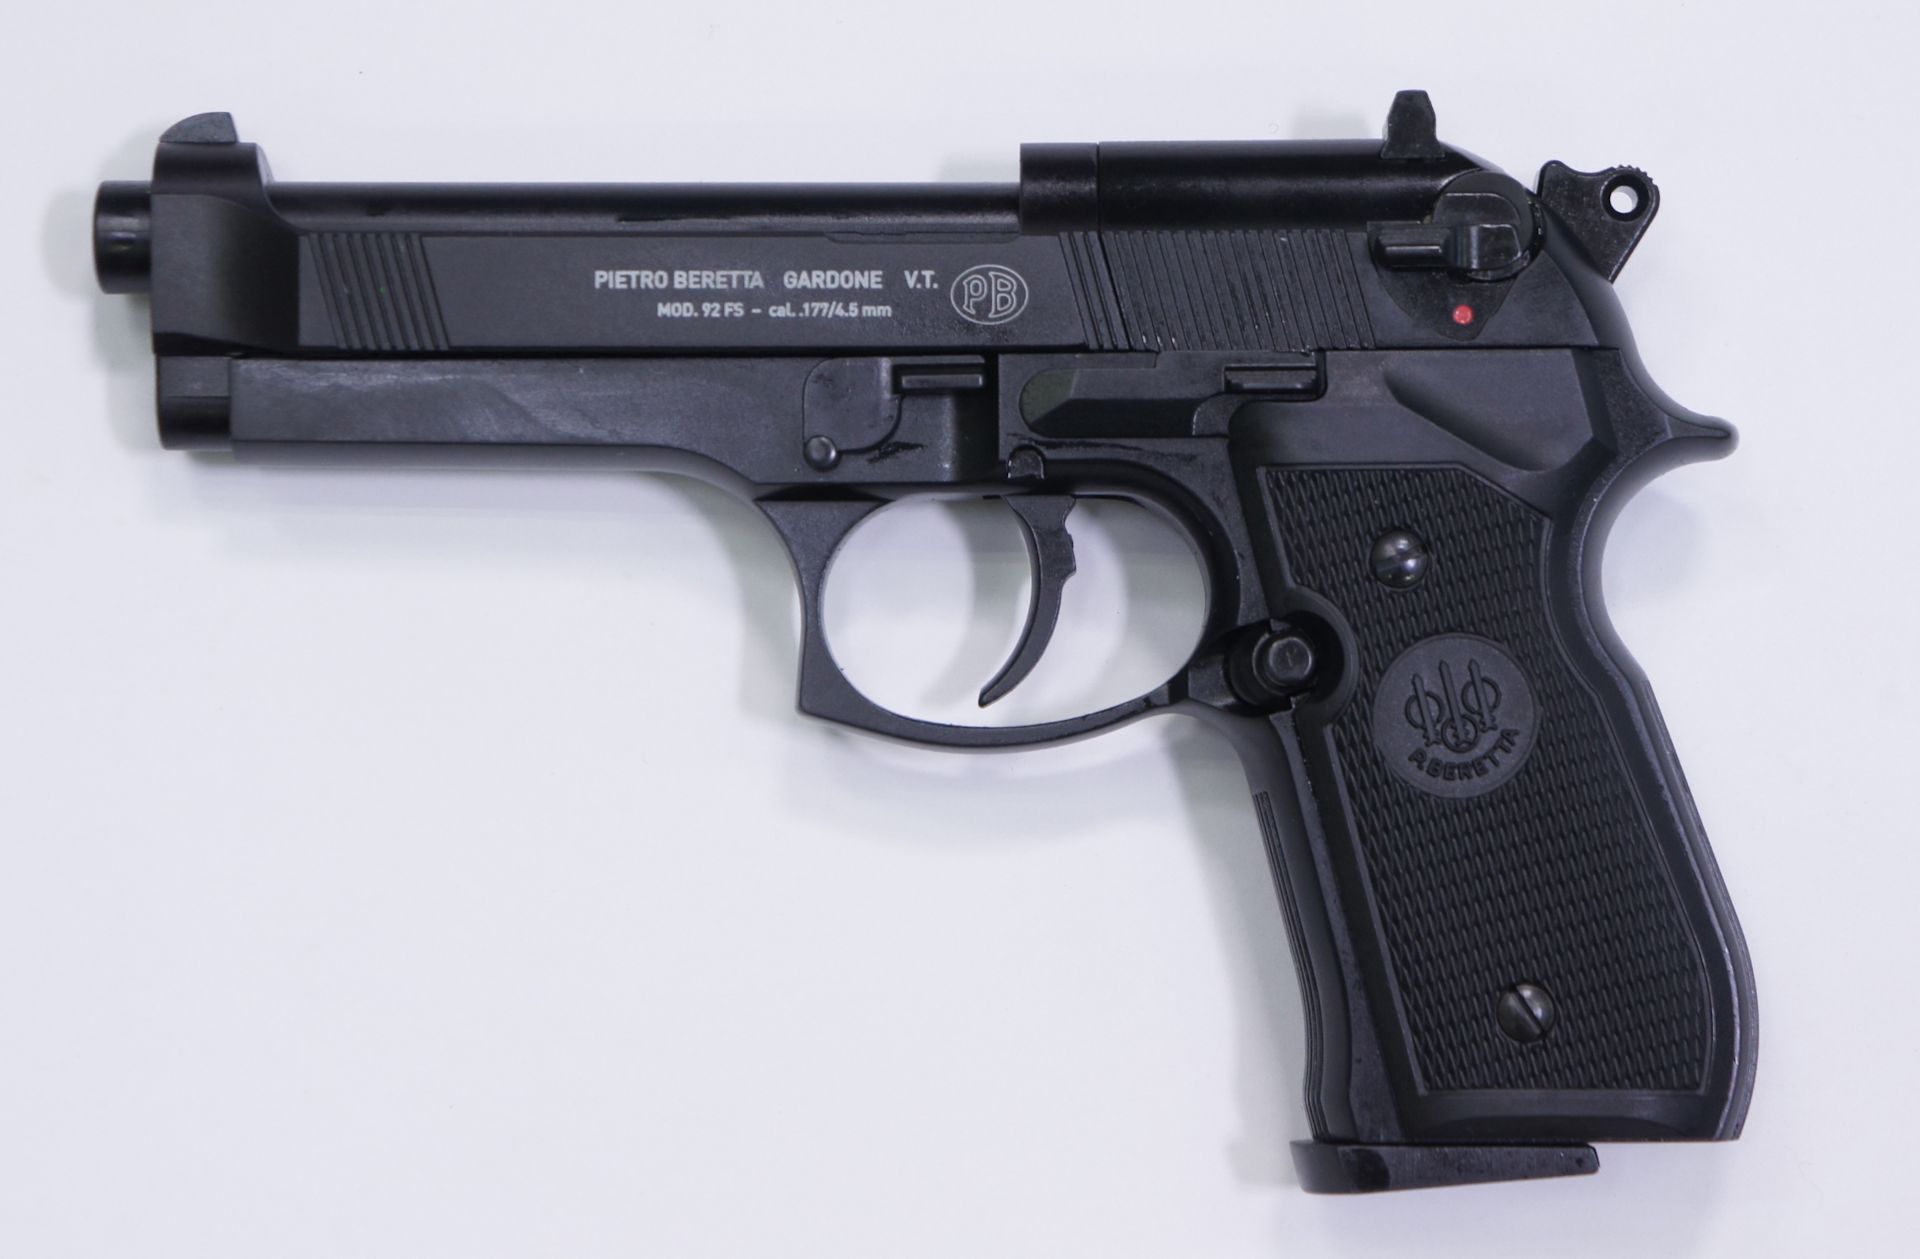 CO2 Pistole Modell Beretta 92FS in schwarz